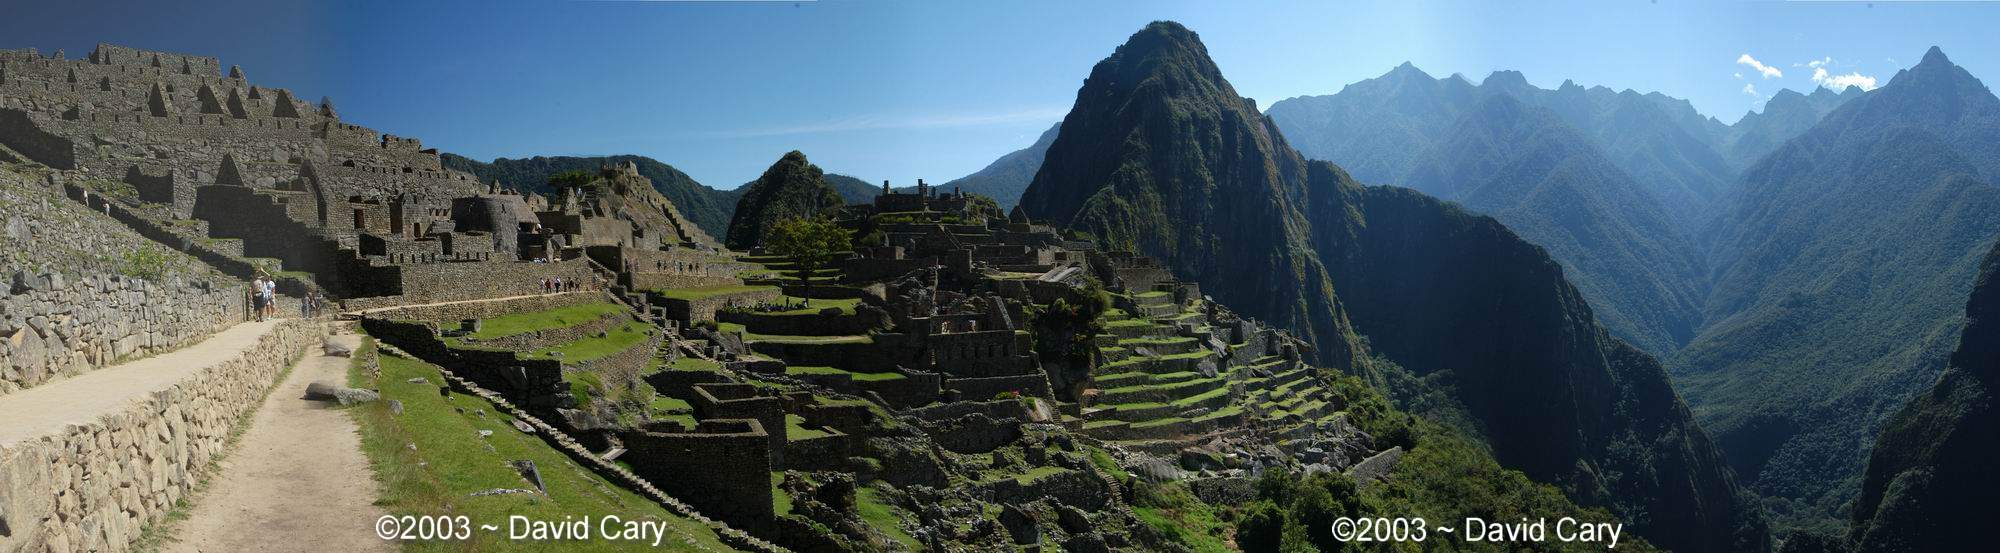 Peru: Lima, Cusco, Machu Picchu, Manu, Arequipa, Nacza... 2003 by David Cary Machu_Picchu - Machu Picchu Panorama